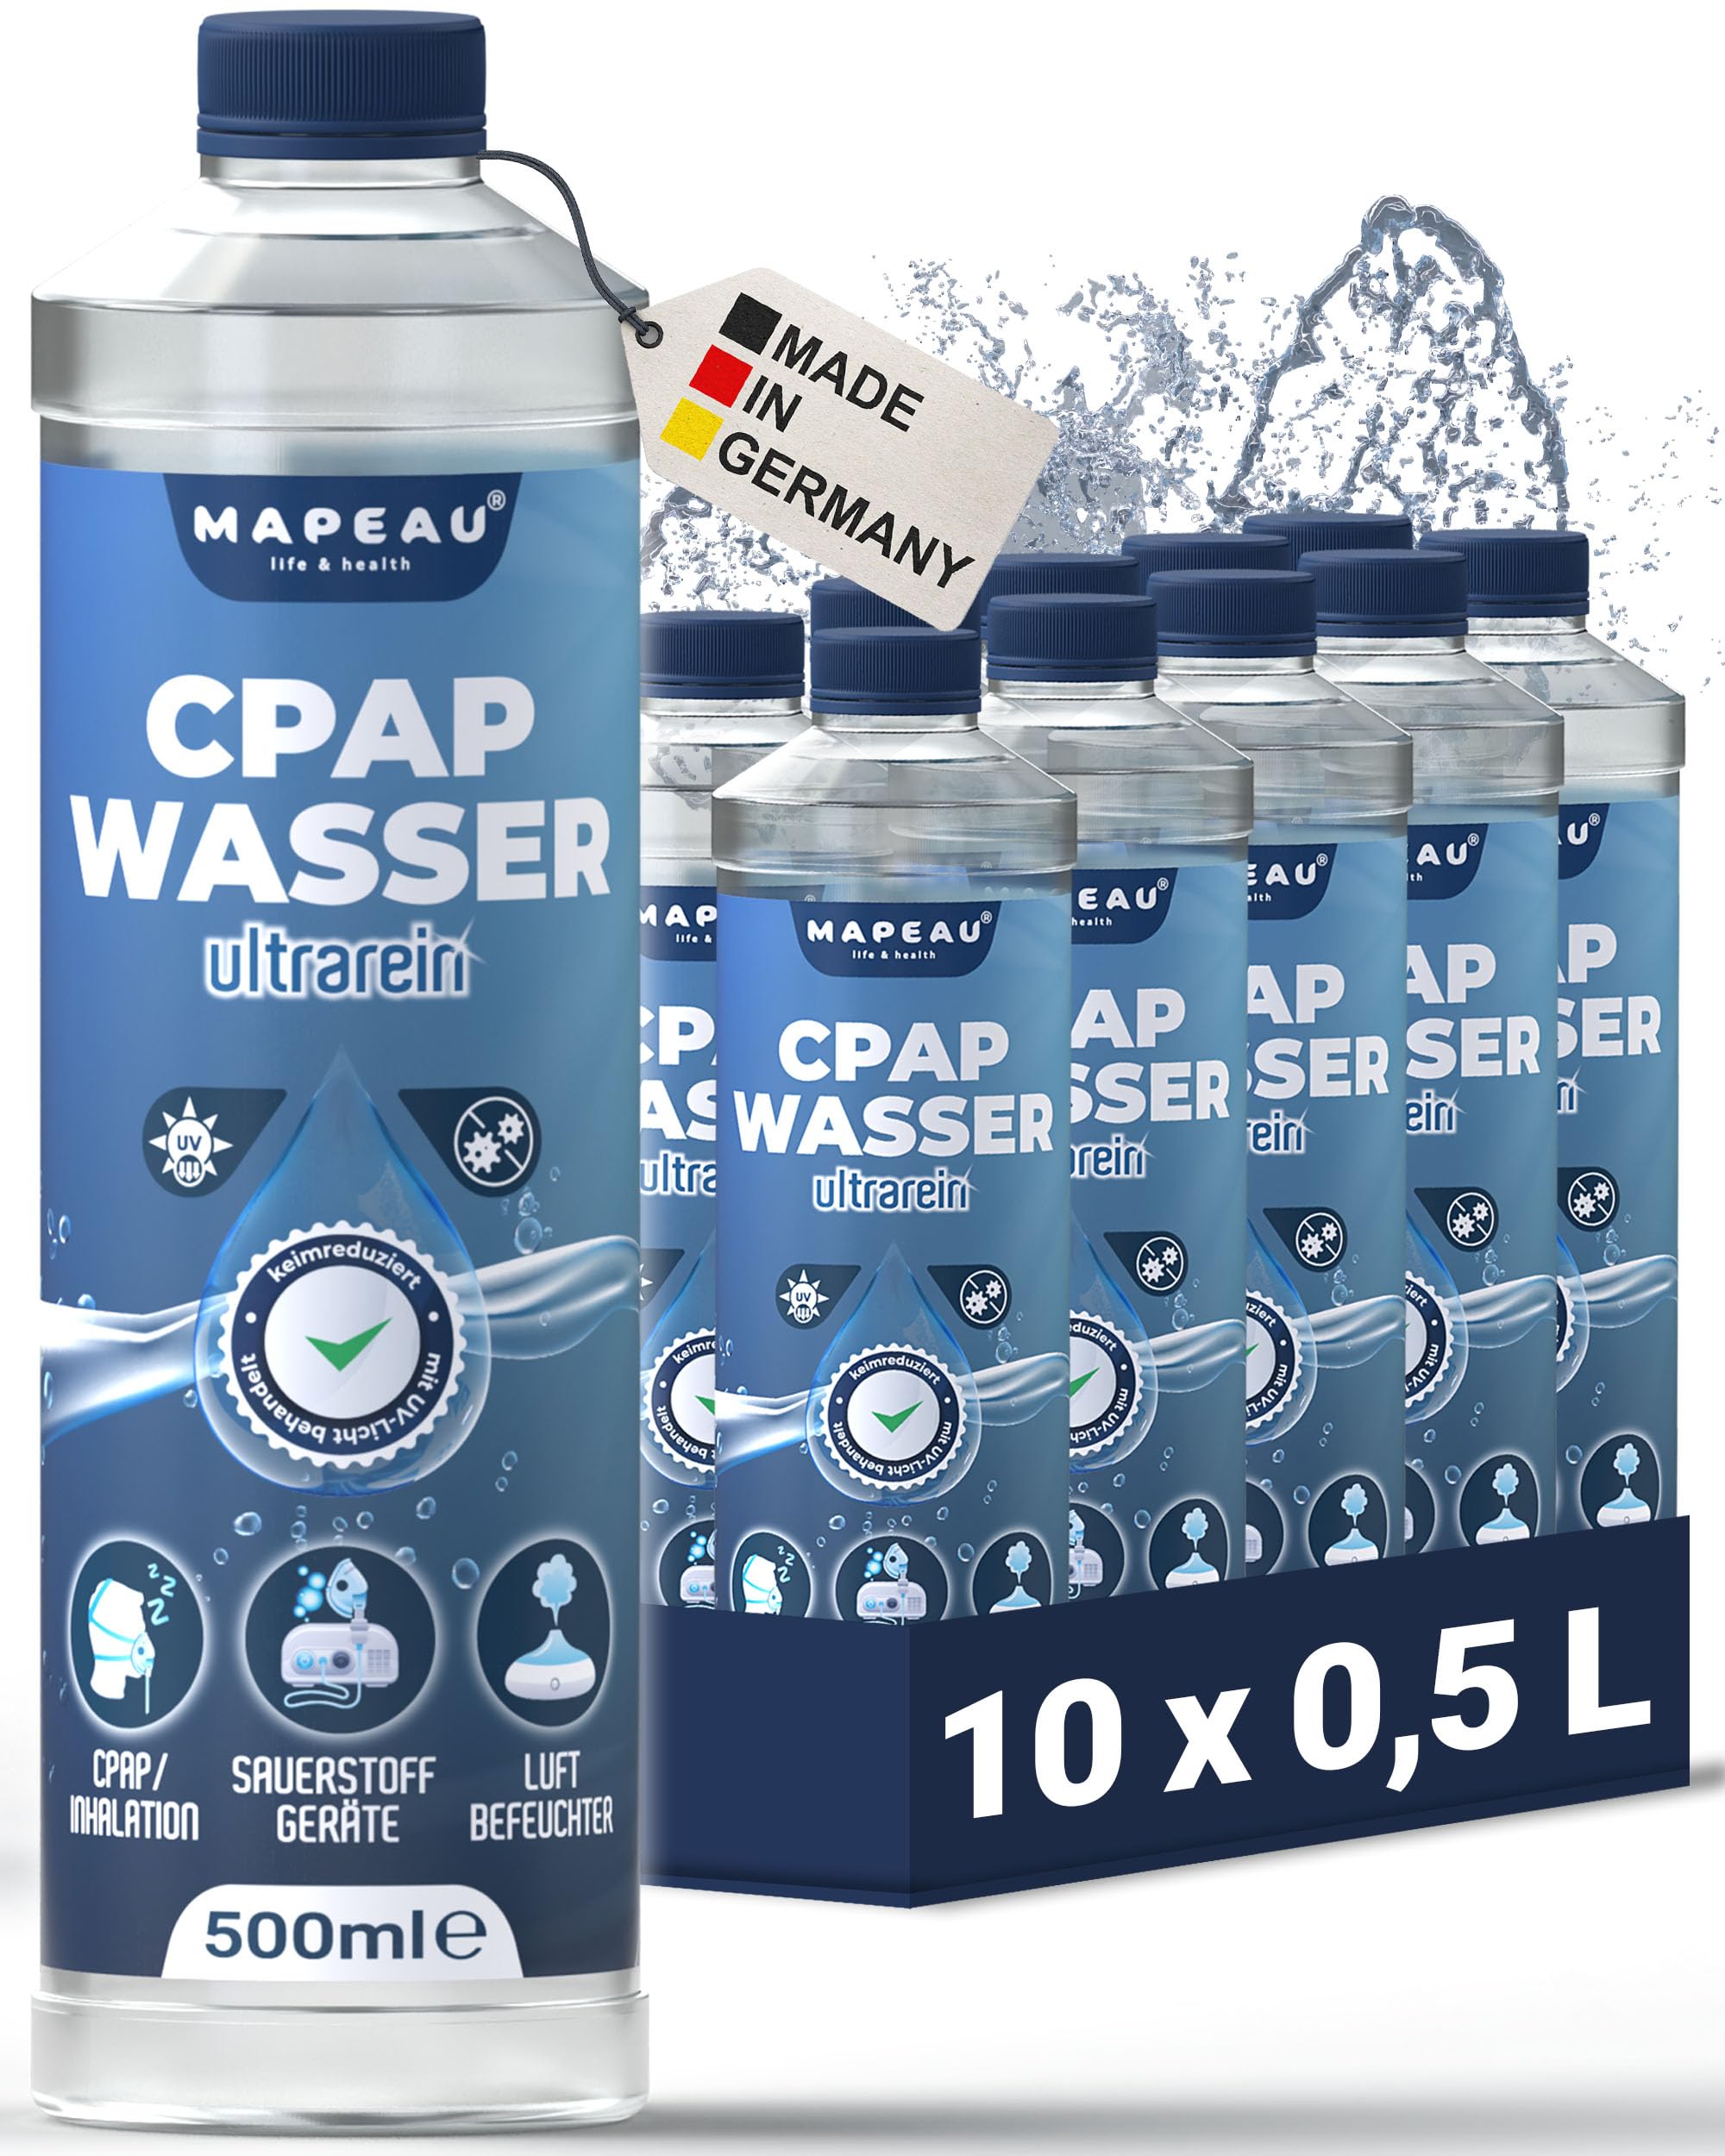 CPAP destilliertes Wasser für CPAP Gerät, keimreduziert Wasser für Sauerstoffgerät, Inhalator, Luftbefeuchter, Atemgas-Befeuchtung, Mapeau (10x 500ml)